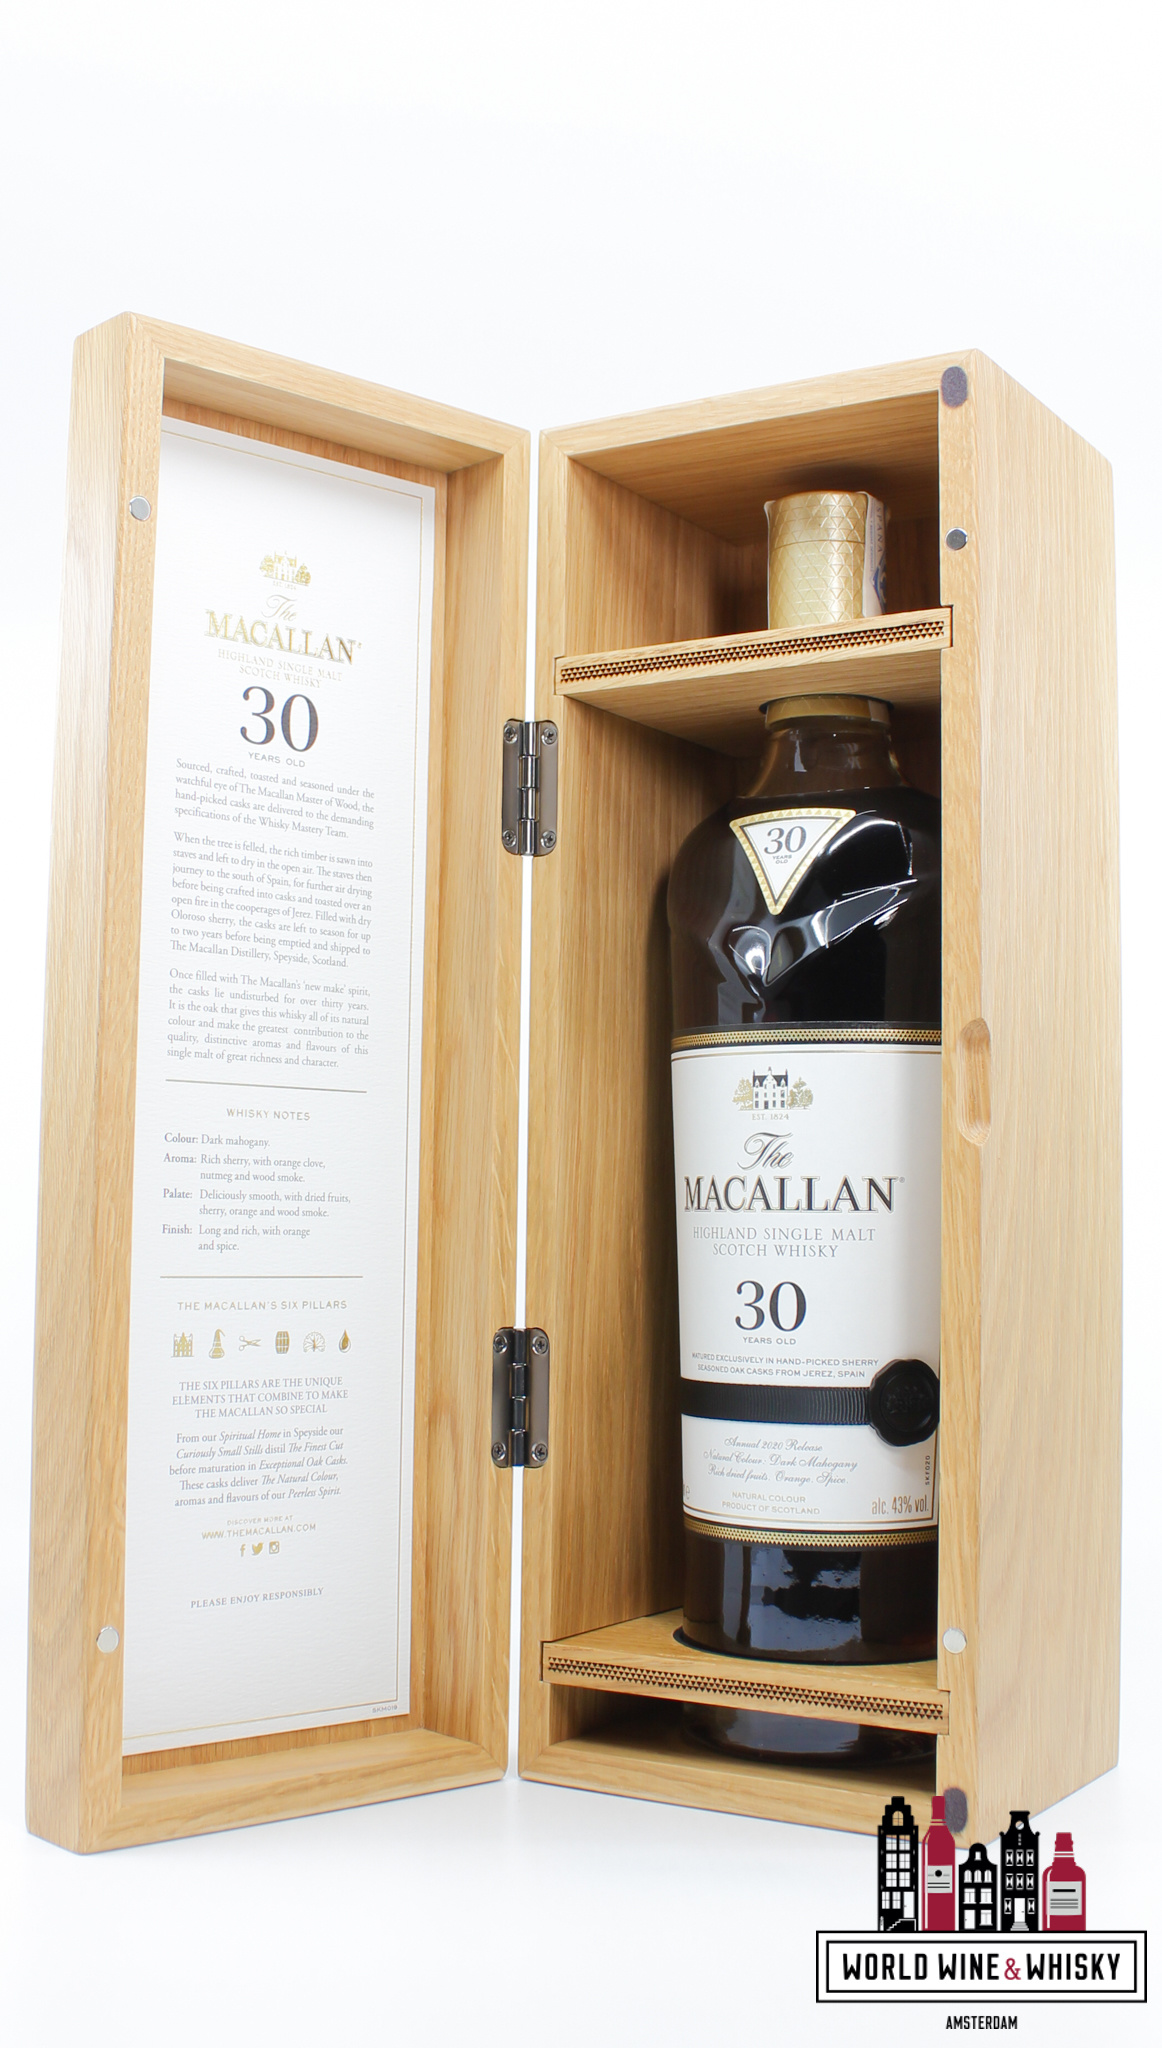 Macallan Macallan 30 Years Old 2020 Release - Sherry Oak Casks from Jerez 43% (in luxury wooden case)